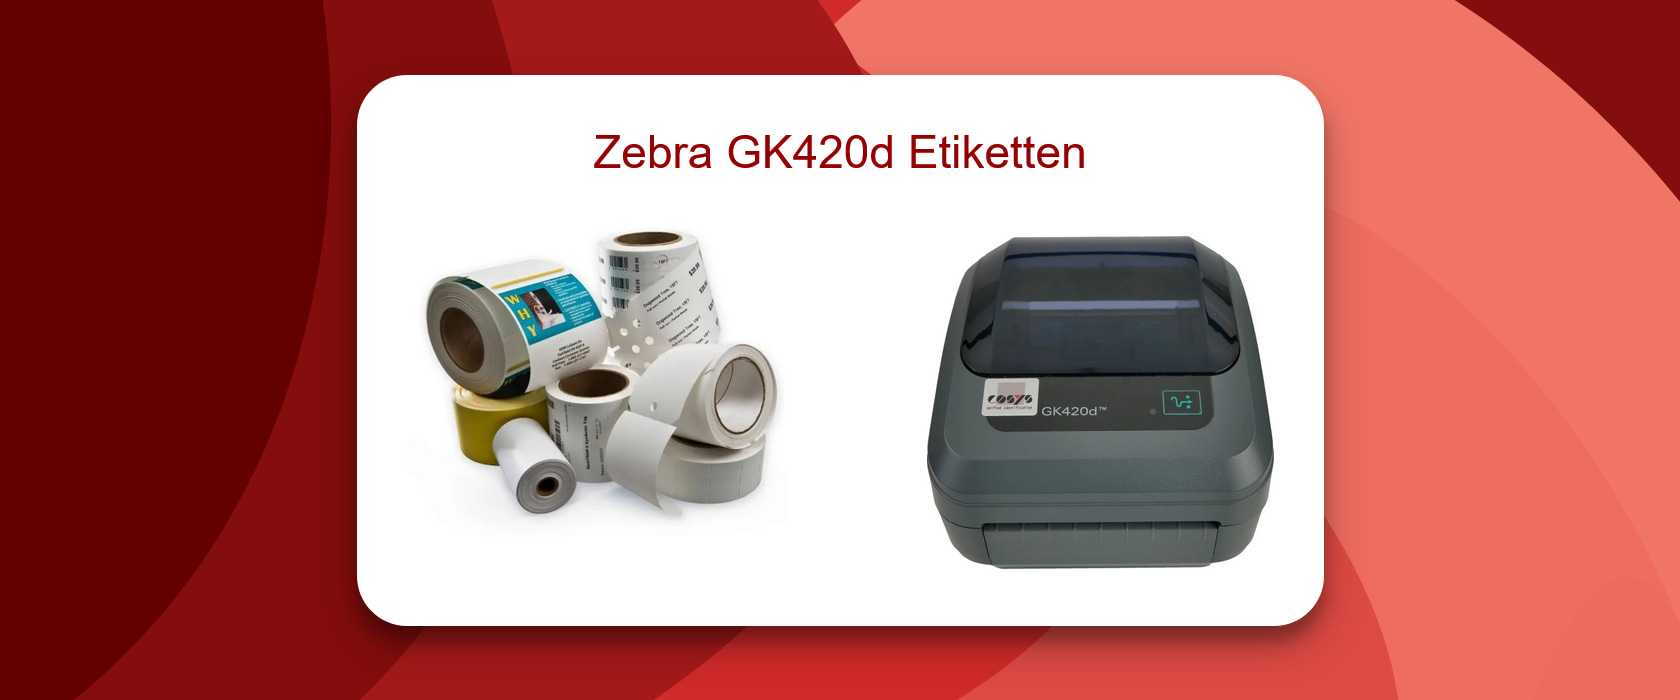 Etiketten für das Zebra GK420d